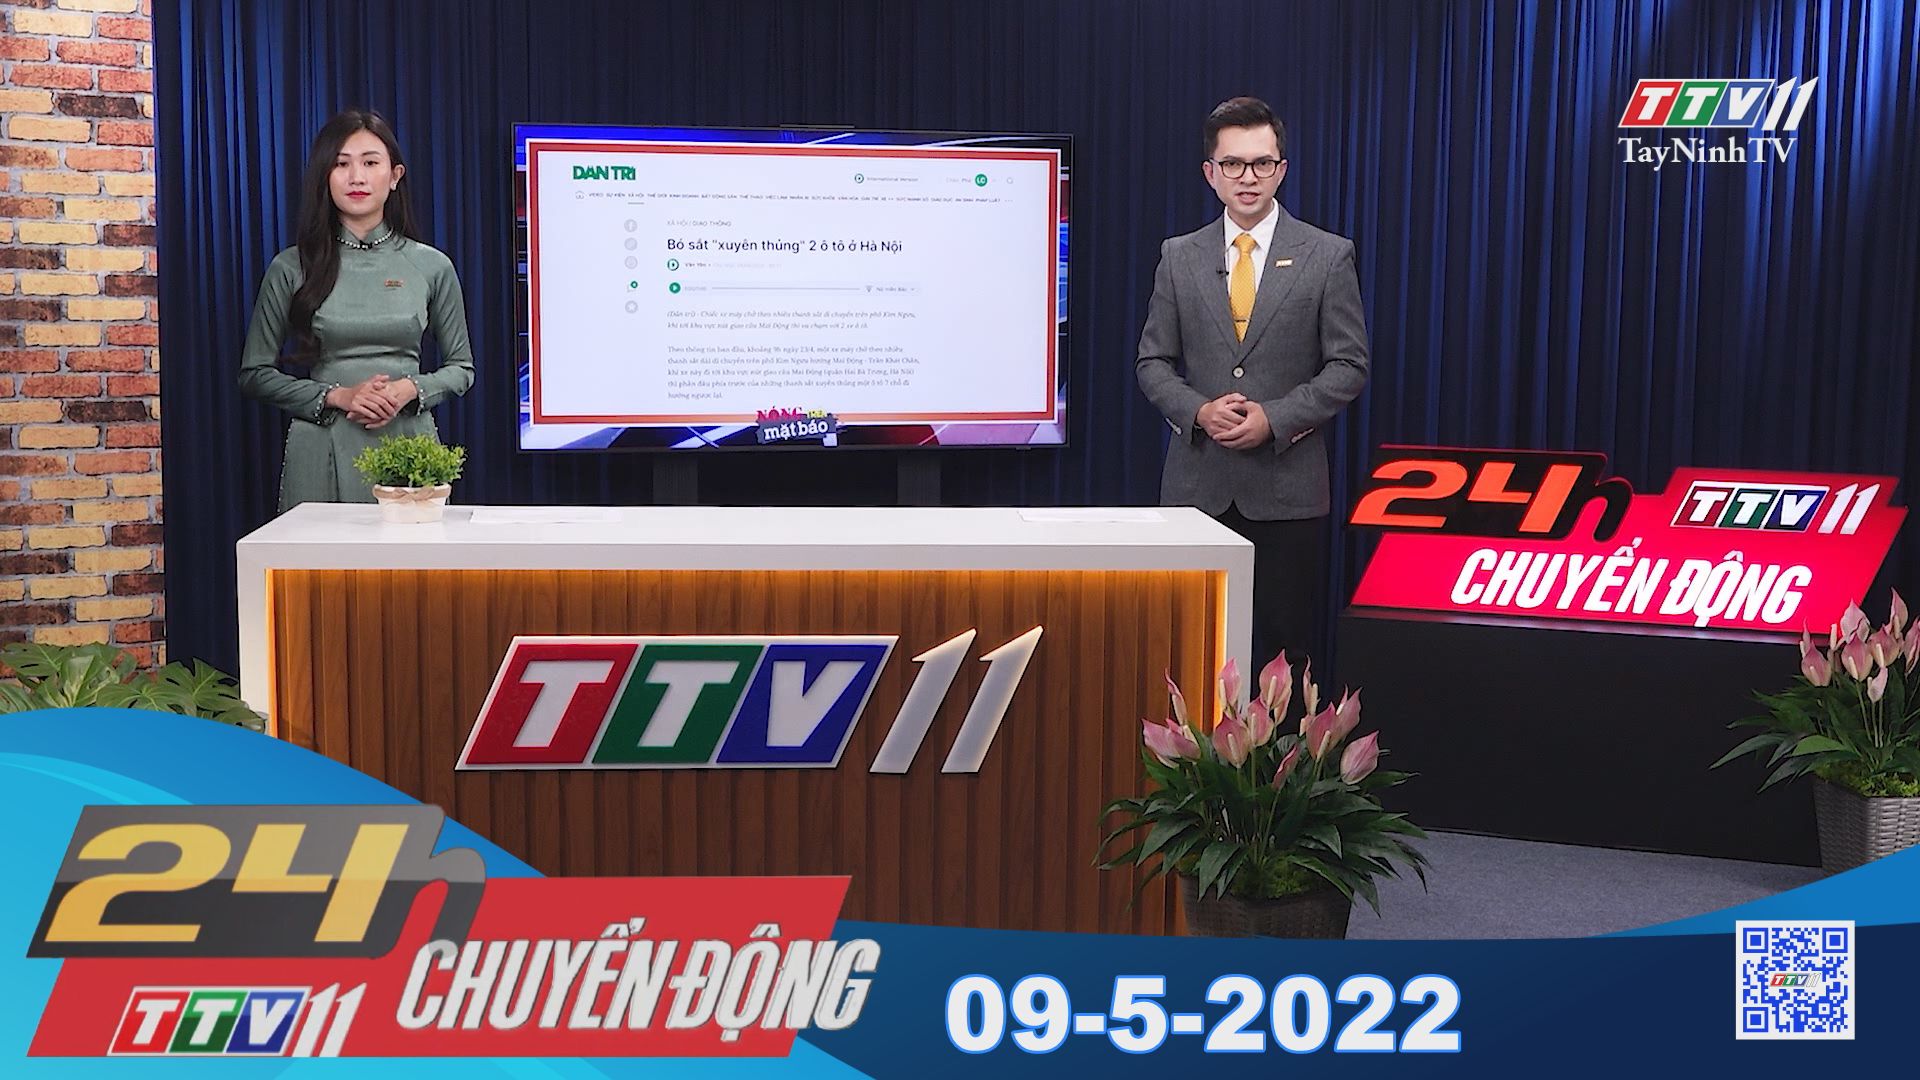 24h Chuyển động 09-5-2022 | Tin tức hôm nay | TayNinhTV